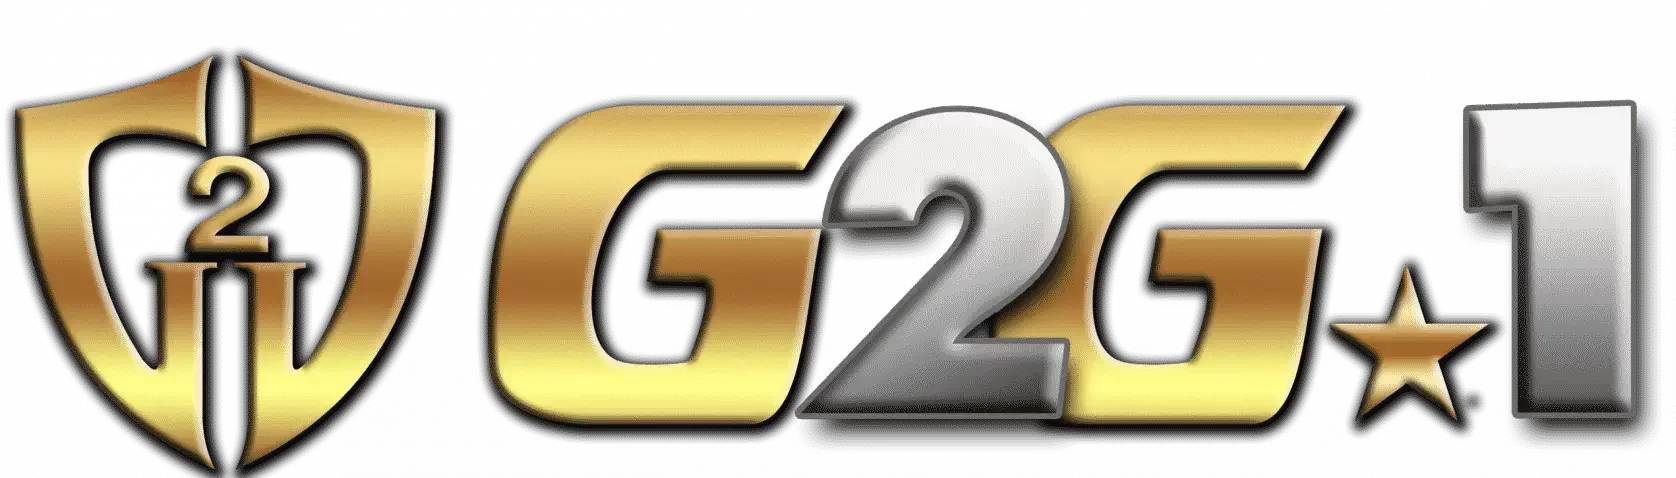 g2g1 slot